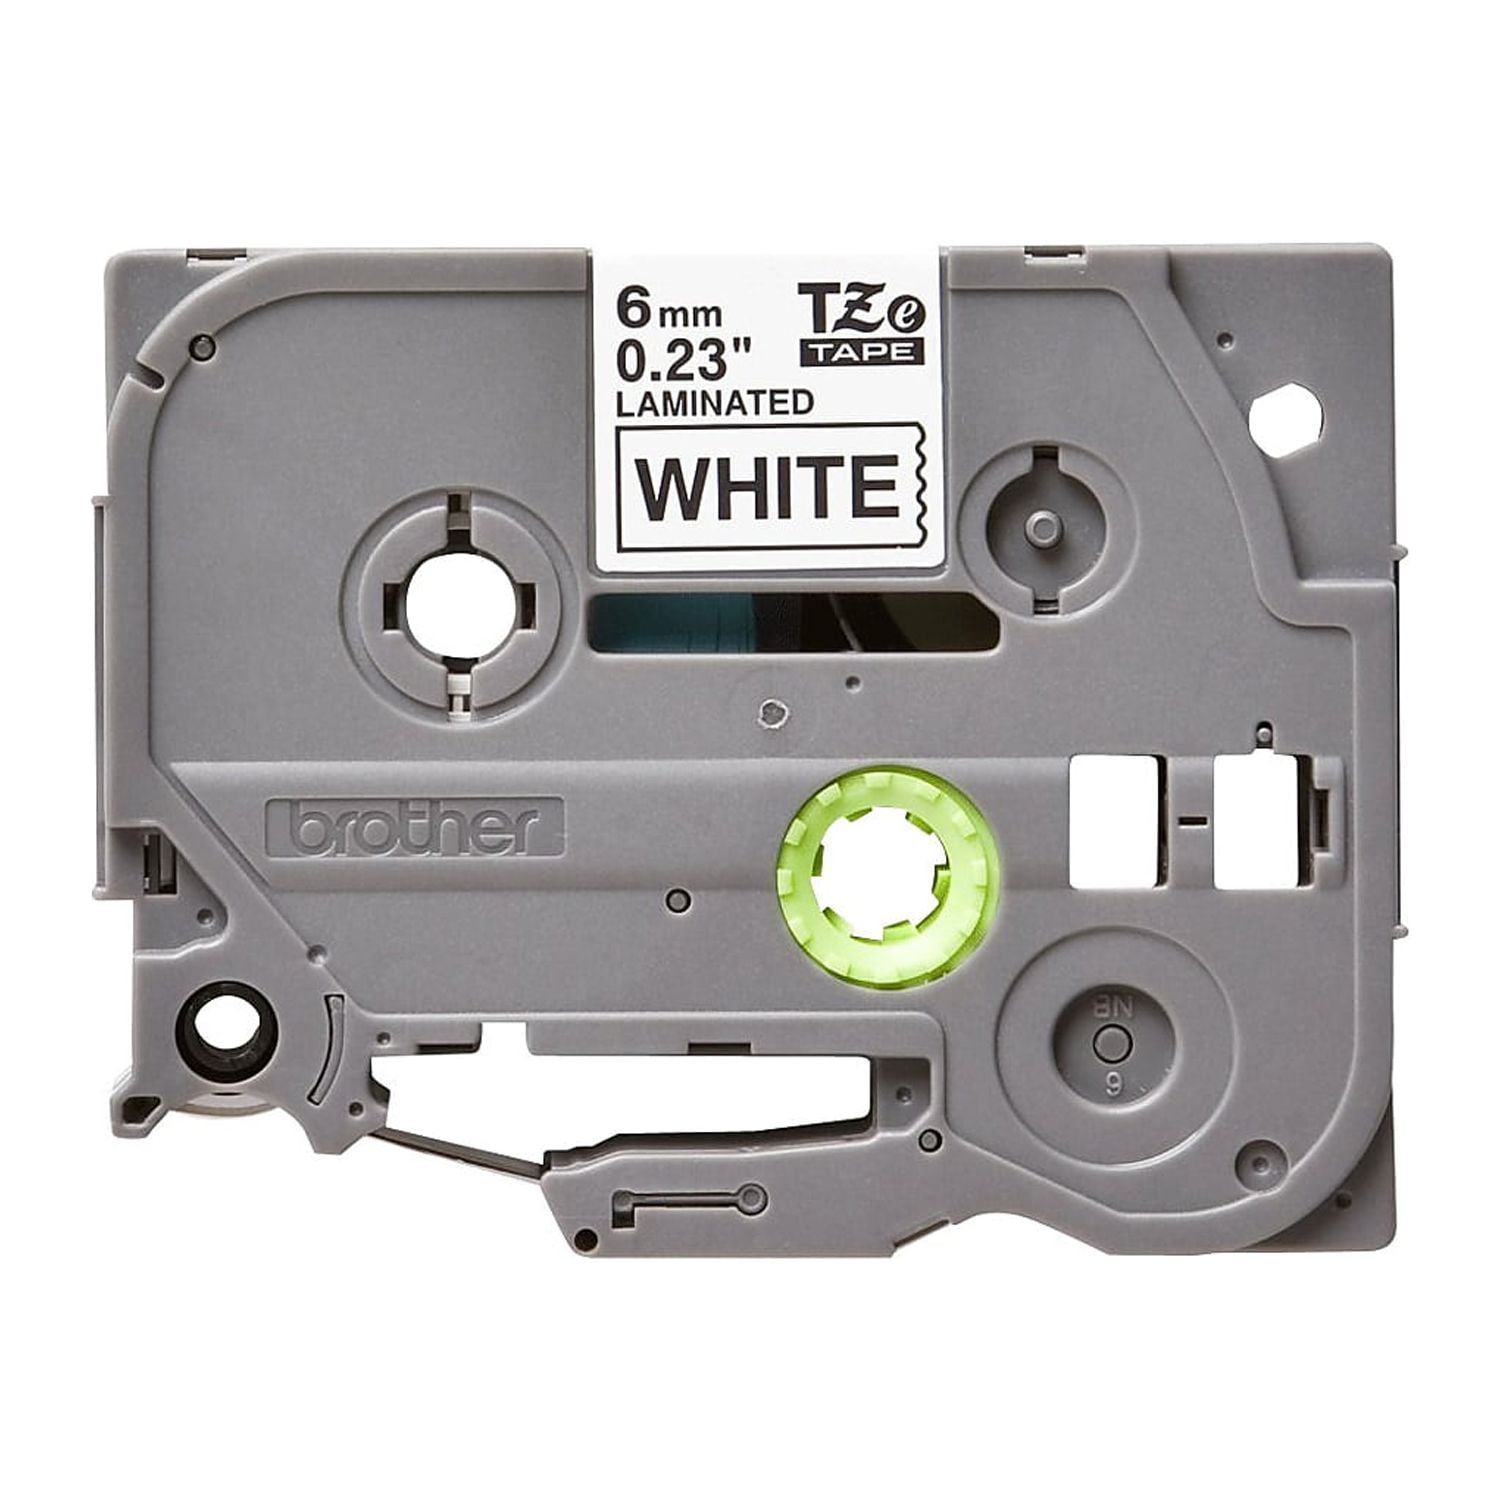 Wecare - Blanc - Rouleau (0,9 cm x 8 m) 1 cassette(s) bande d'étiquettes -  pour Brother PT-D210, D600, H110; P-Touch PT-1005, 1880, E800, H110;  P-Touch Cube Plus PT-P710 - Papier d'impression 